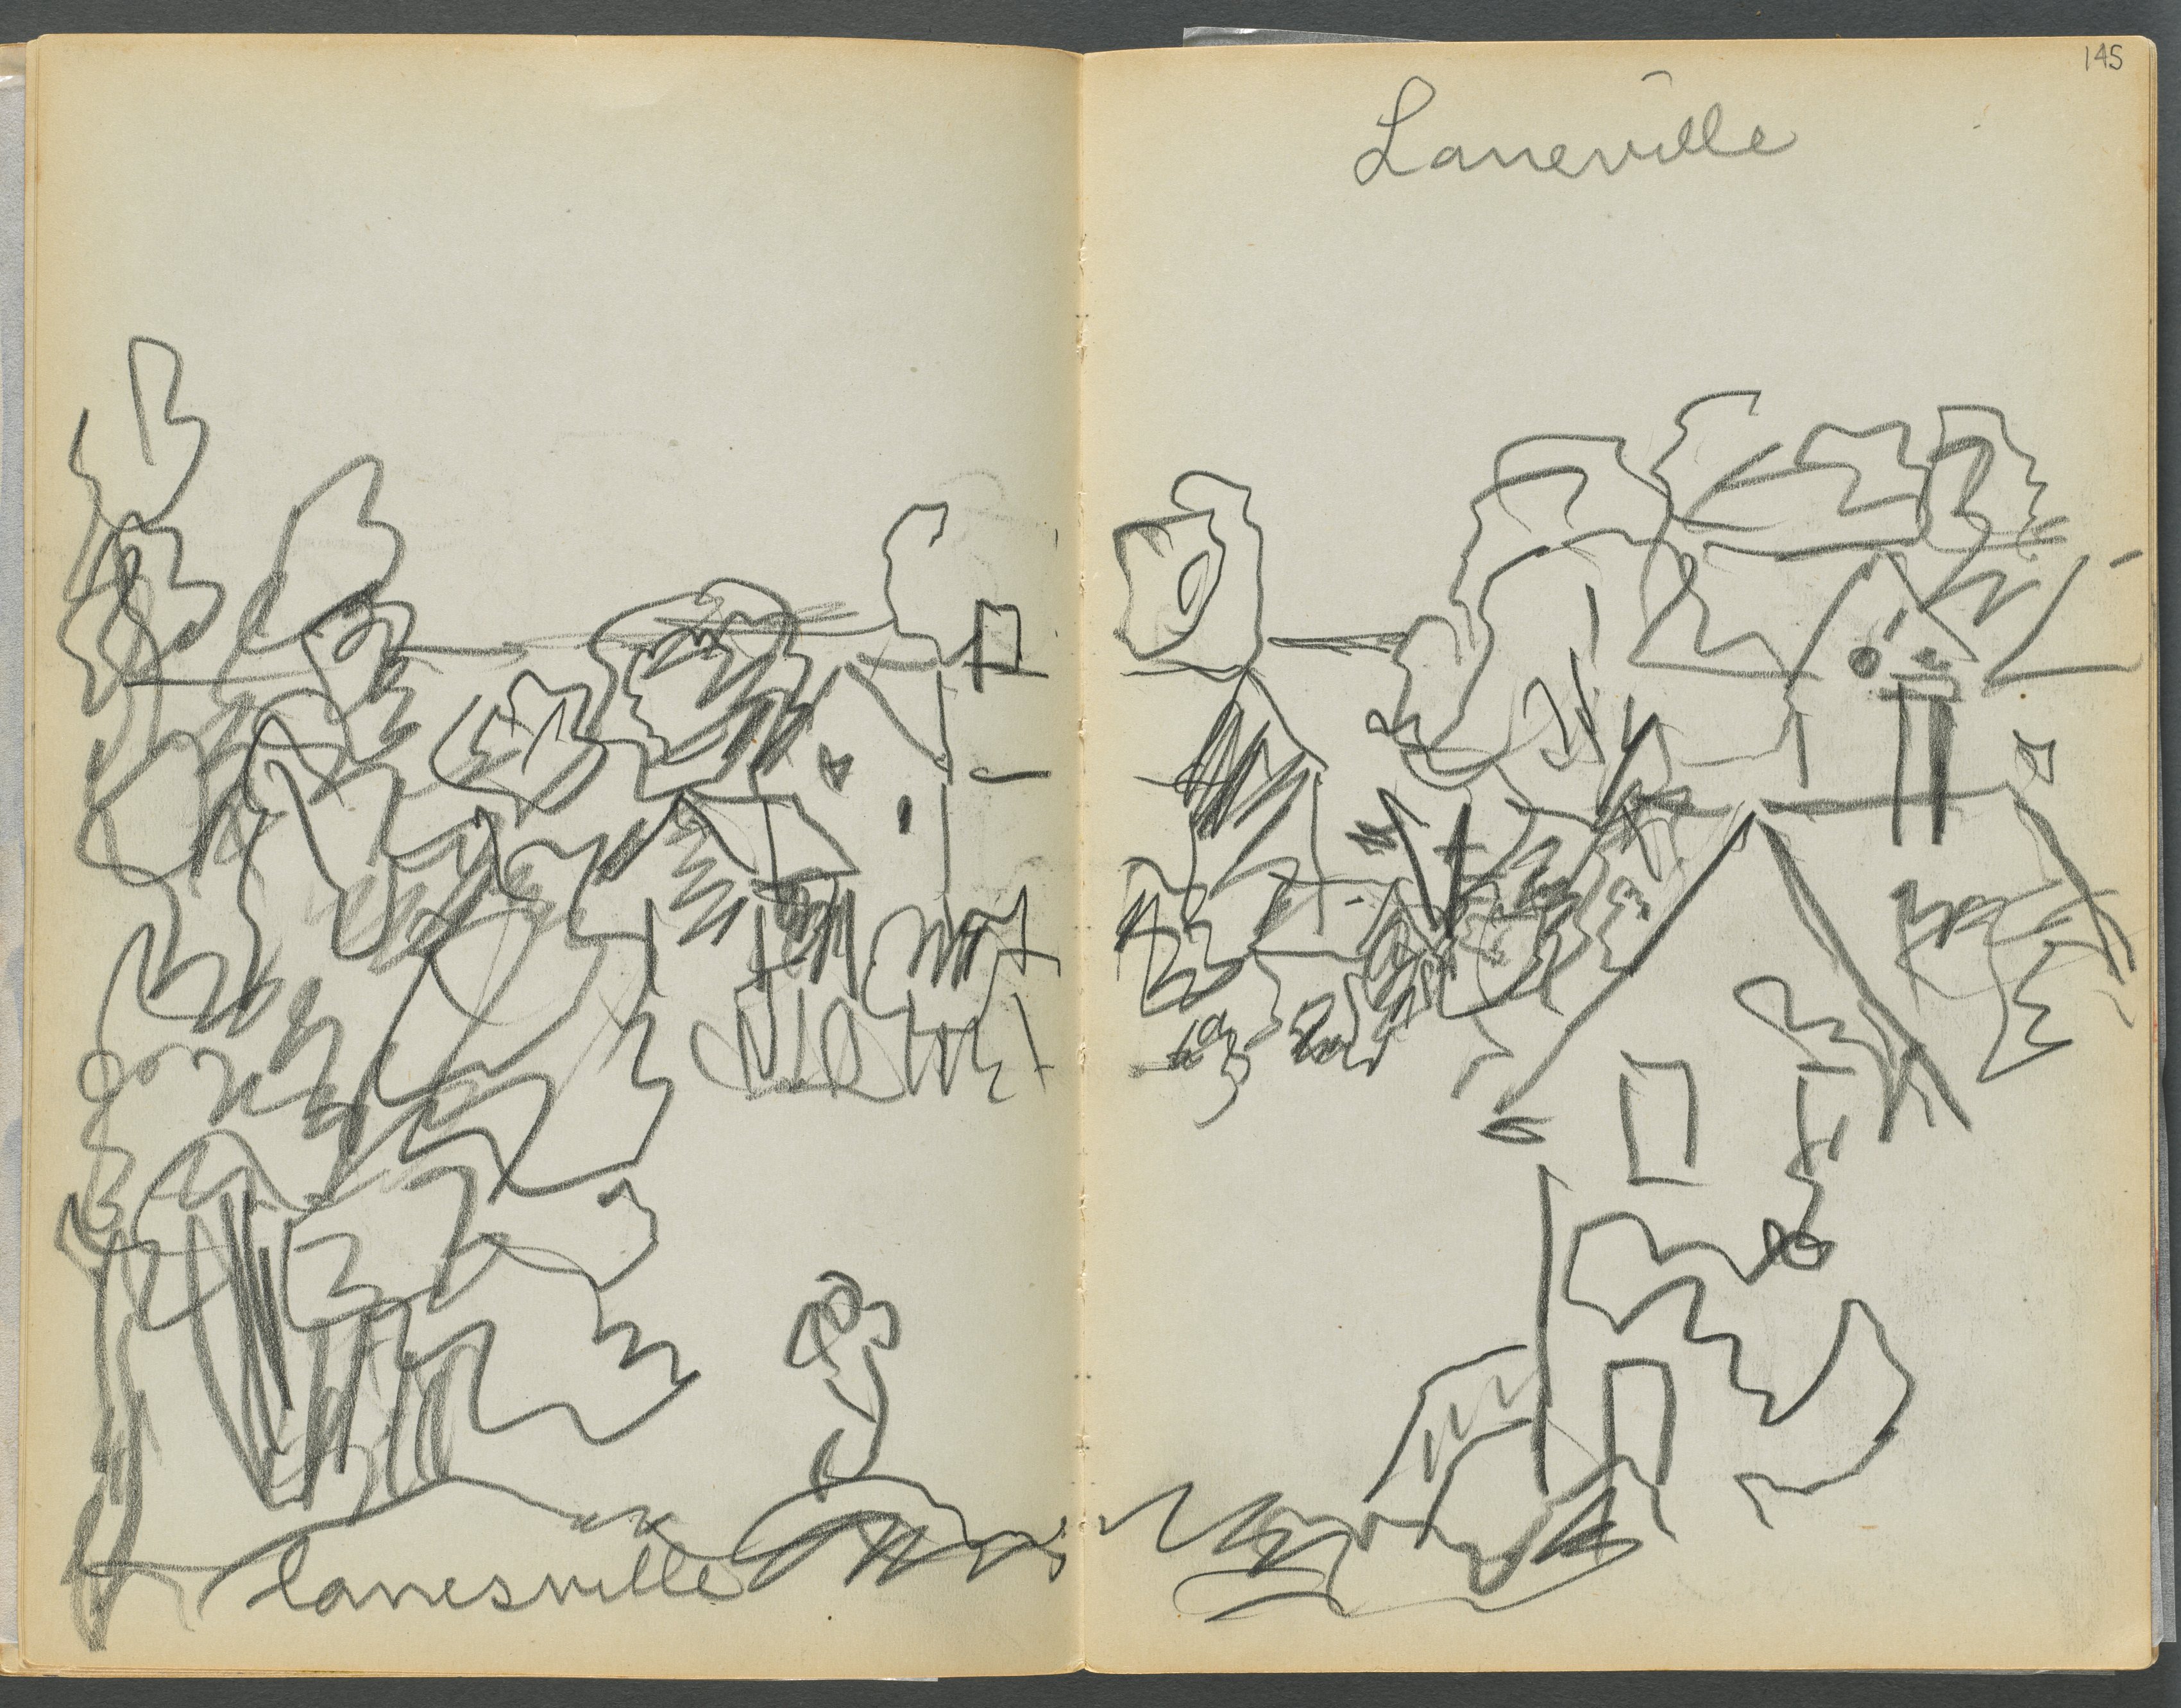 Sketchbook- The Granite Shore Hotel, Rockport, page 144 & 145: "Lanesville" 